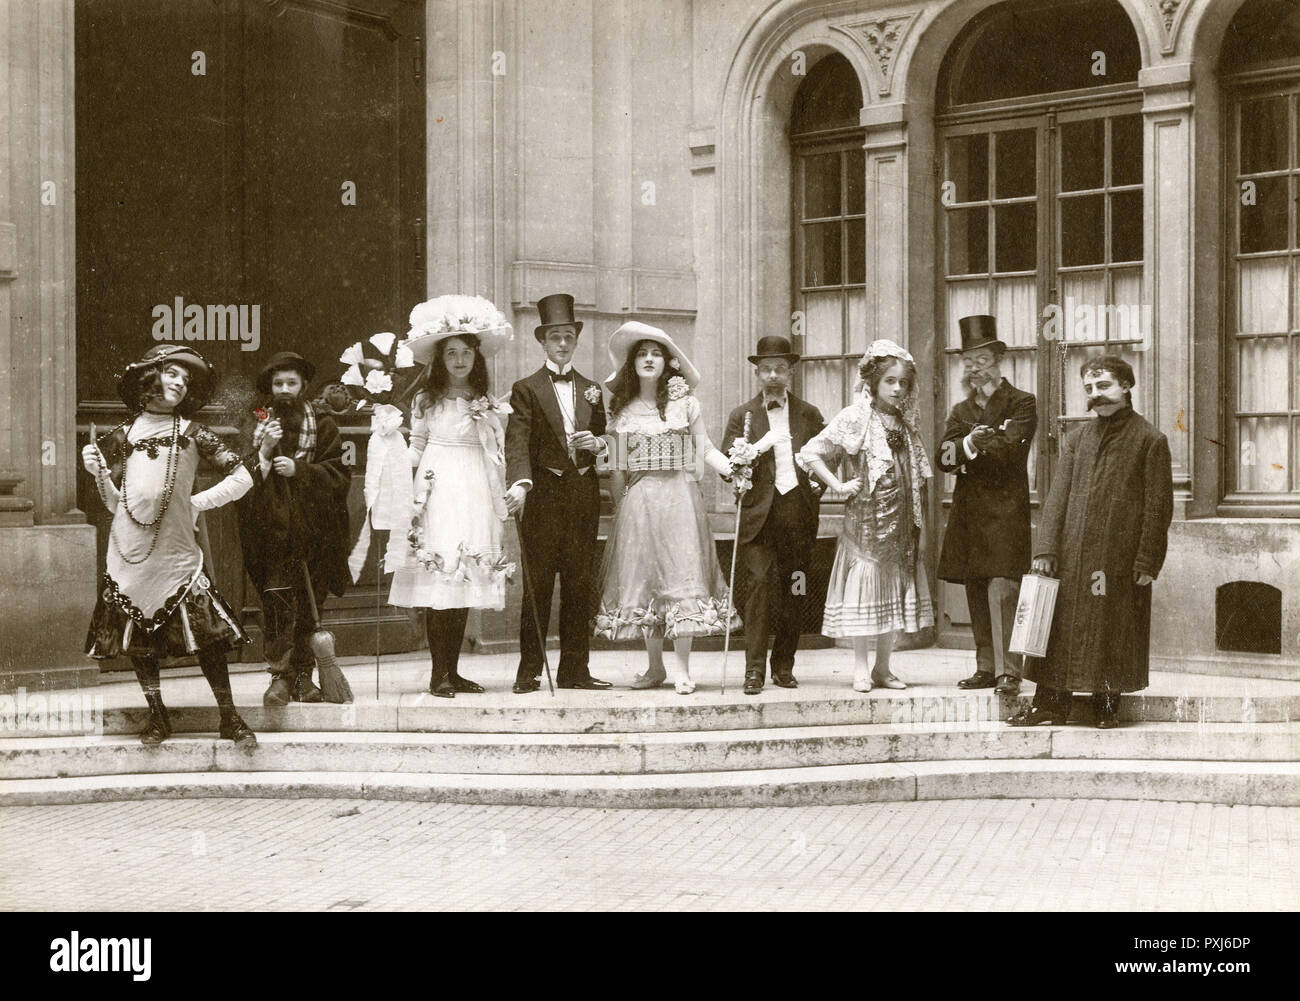 Youthful Parisian Music Hall Revue Company Stock Photo